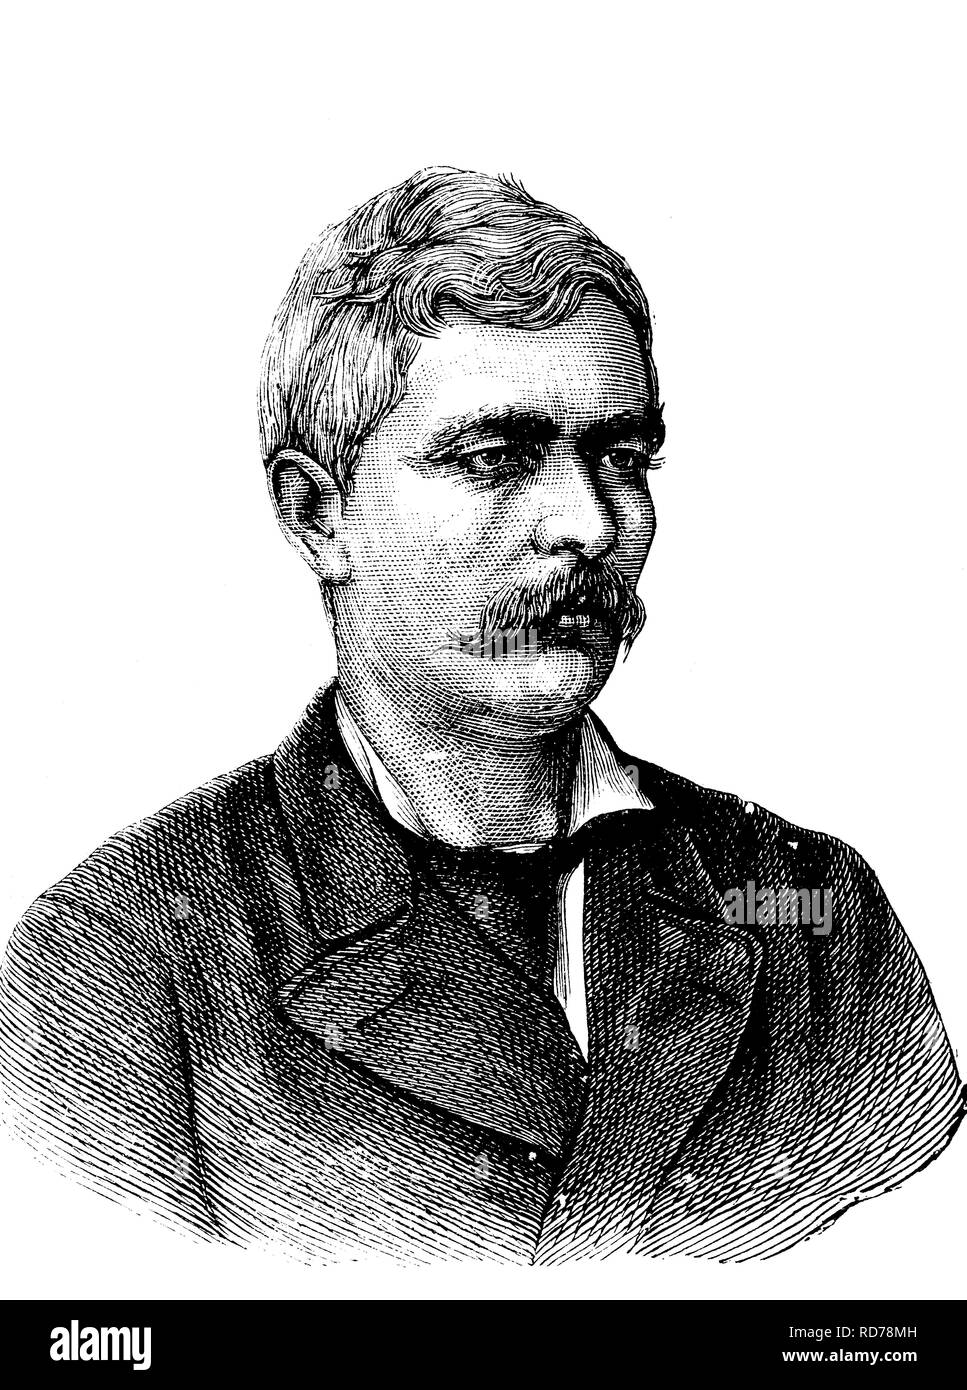 Henry Morton Stanley ou Bula Matari, 1841 - 1904, journaliste, auteur et explorateur, historique gravure sur bois, vers 1880 Banque D'Images